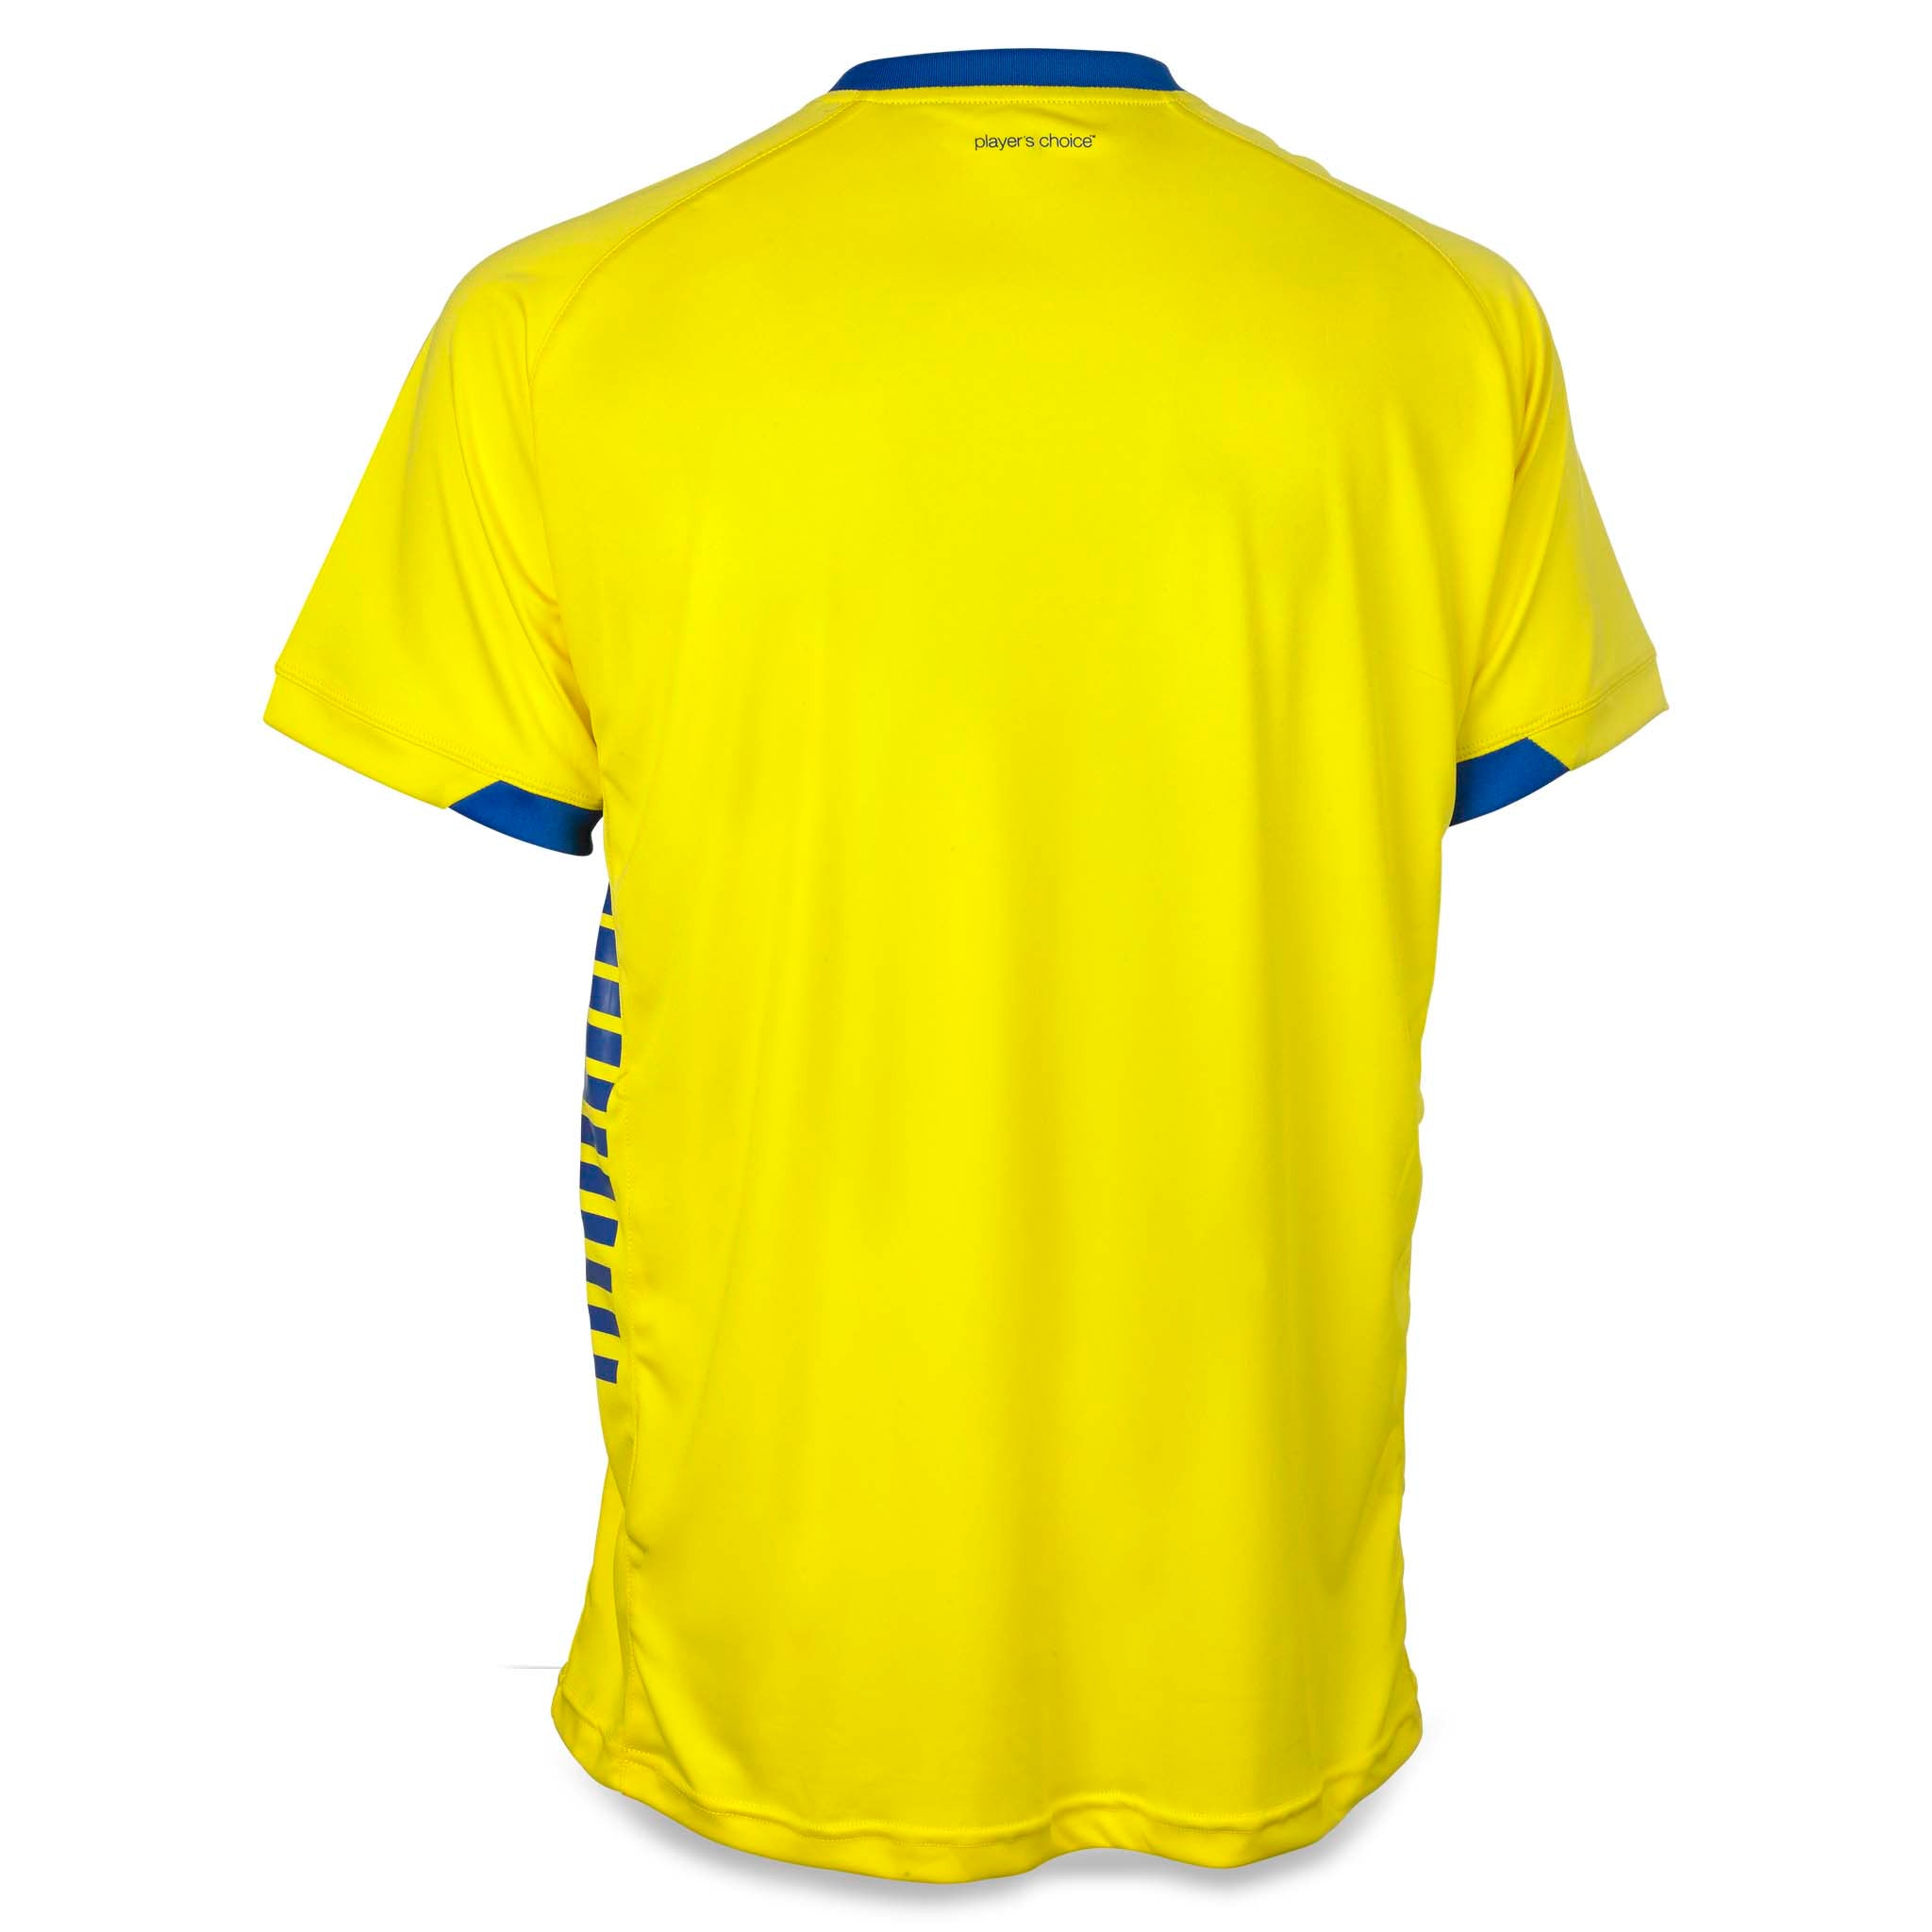 Spain Kortärmad spelartröja #färg_ #färg_gul/blå #färg_gul/blå